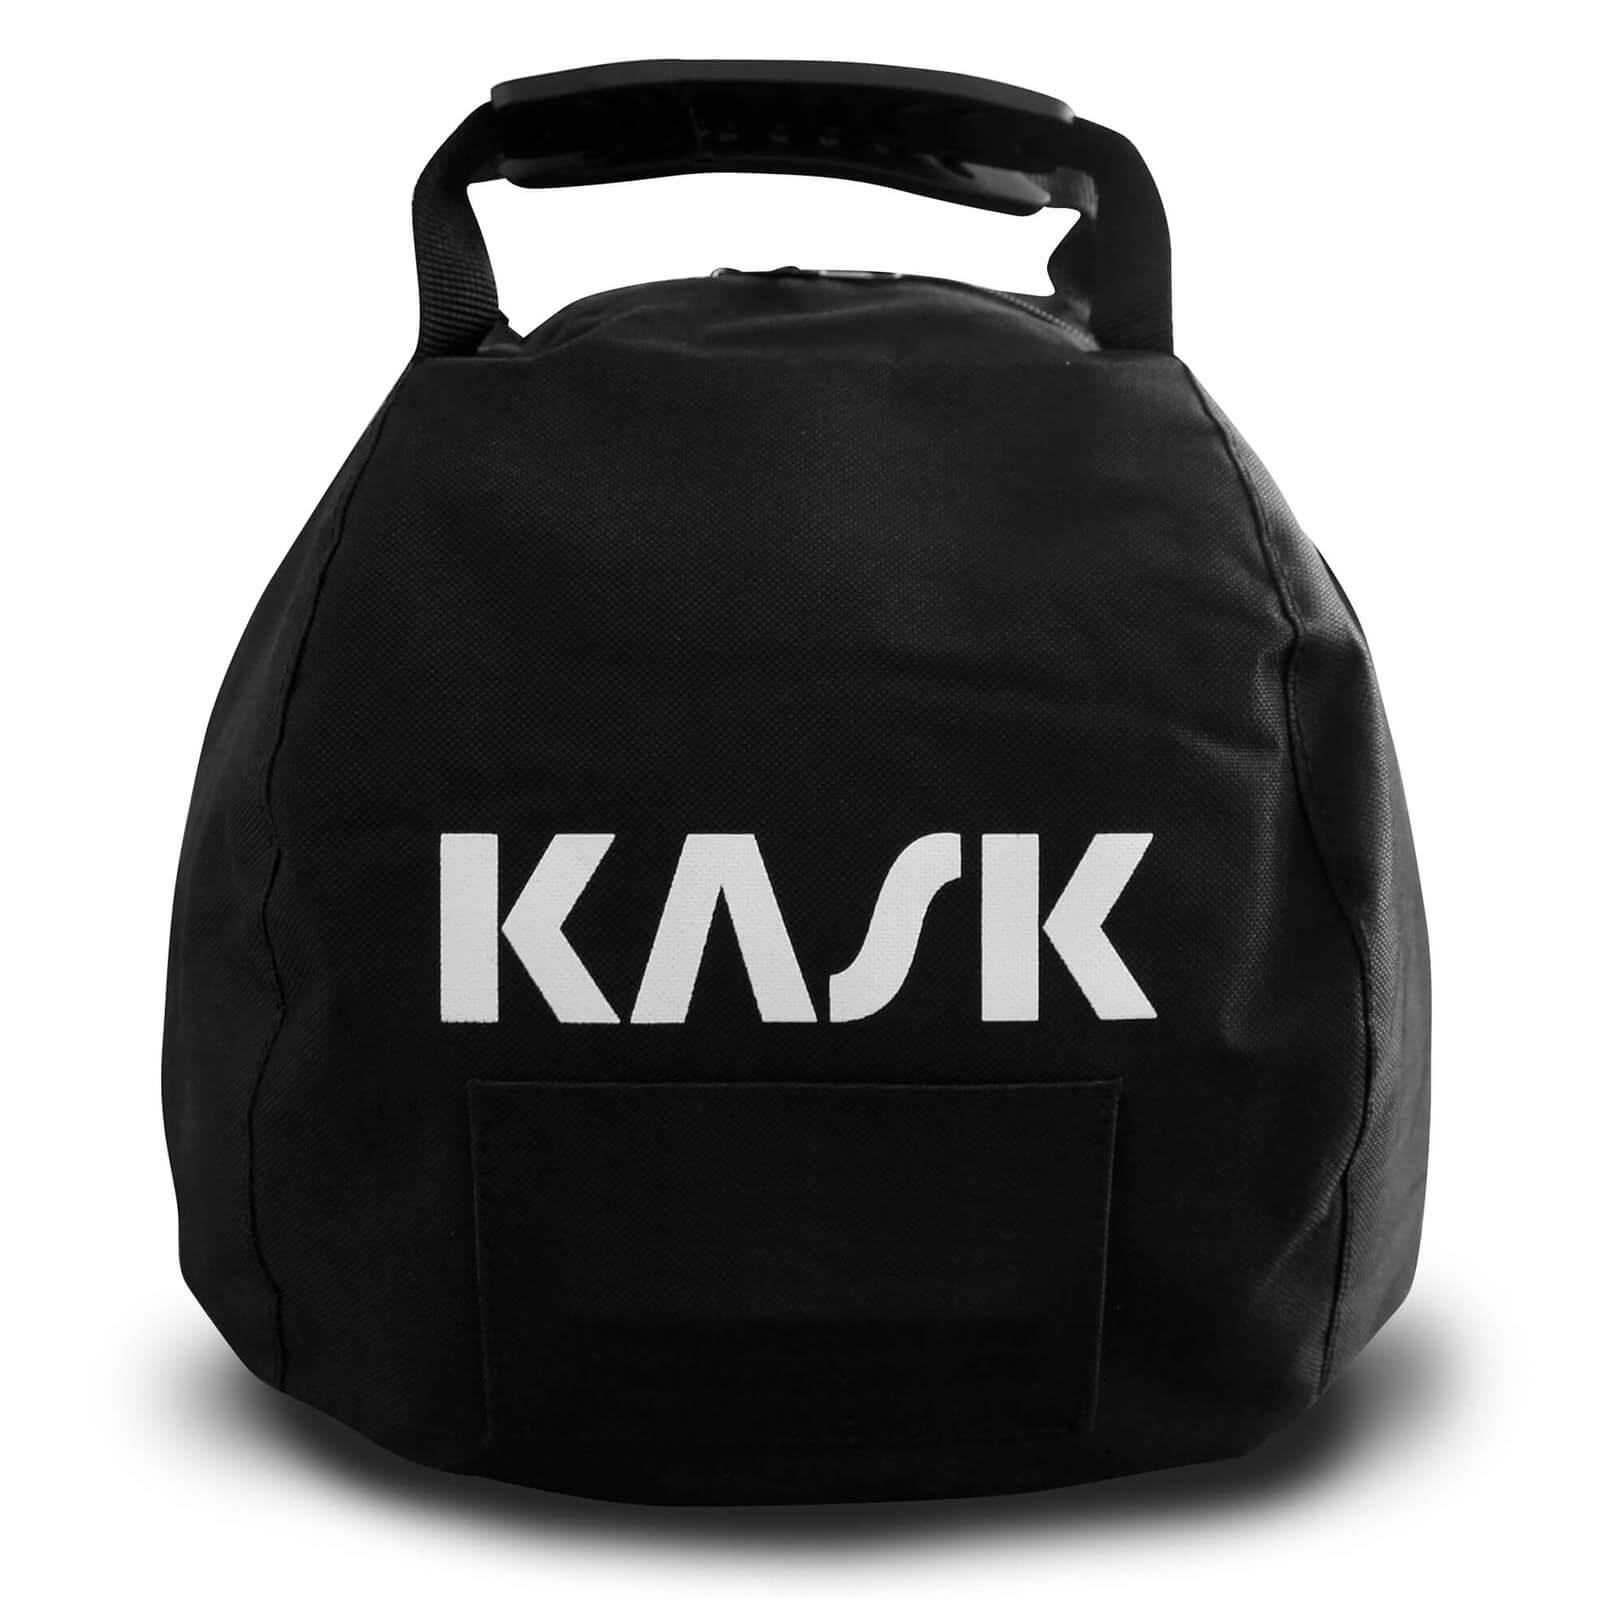 KASK Helmtasche mit Handgriffen und Reißverschluss - Tragetasche - Aufbewahrung von KASK